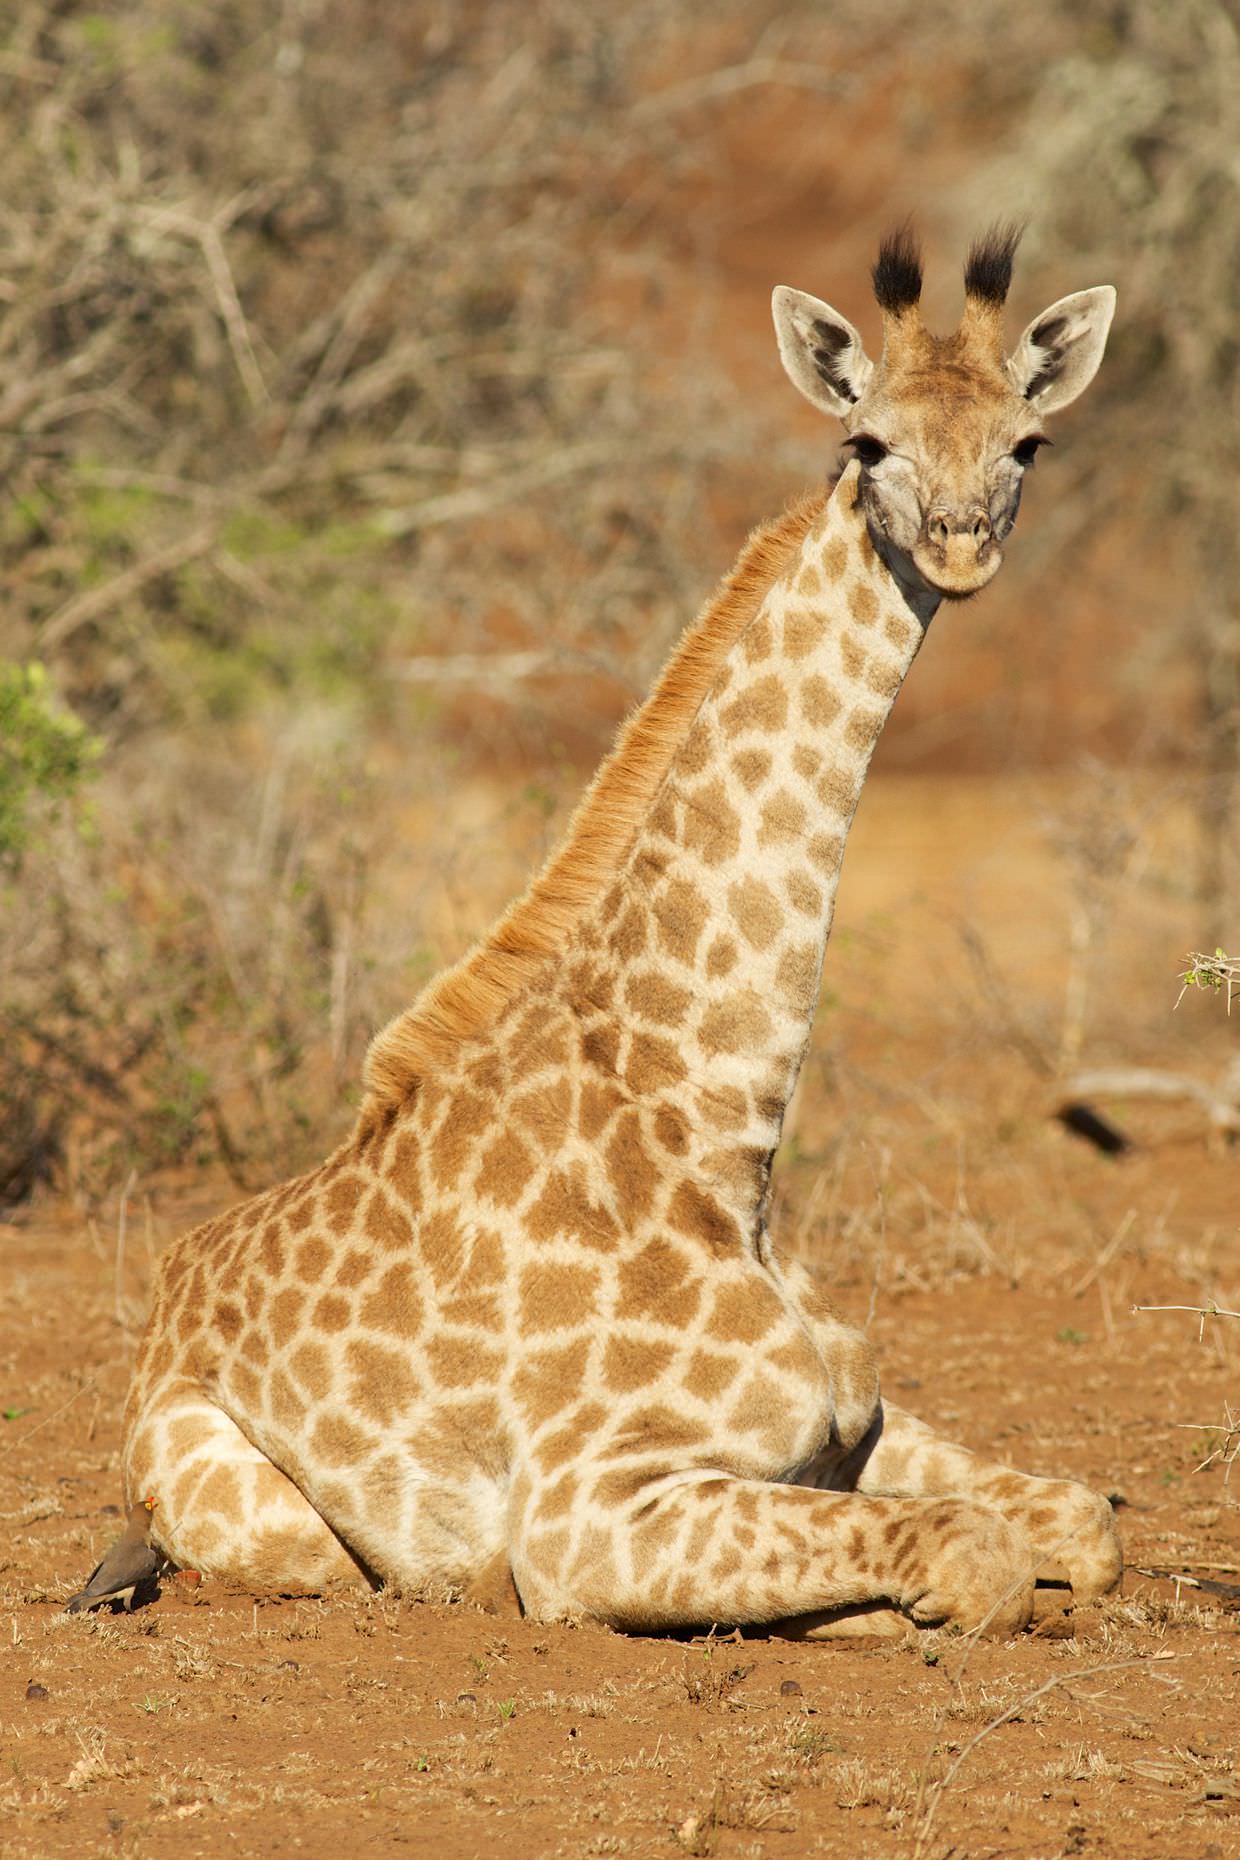 A giraffe sitting down, alongside a watchful oxpecker